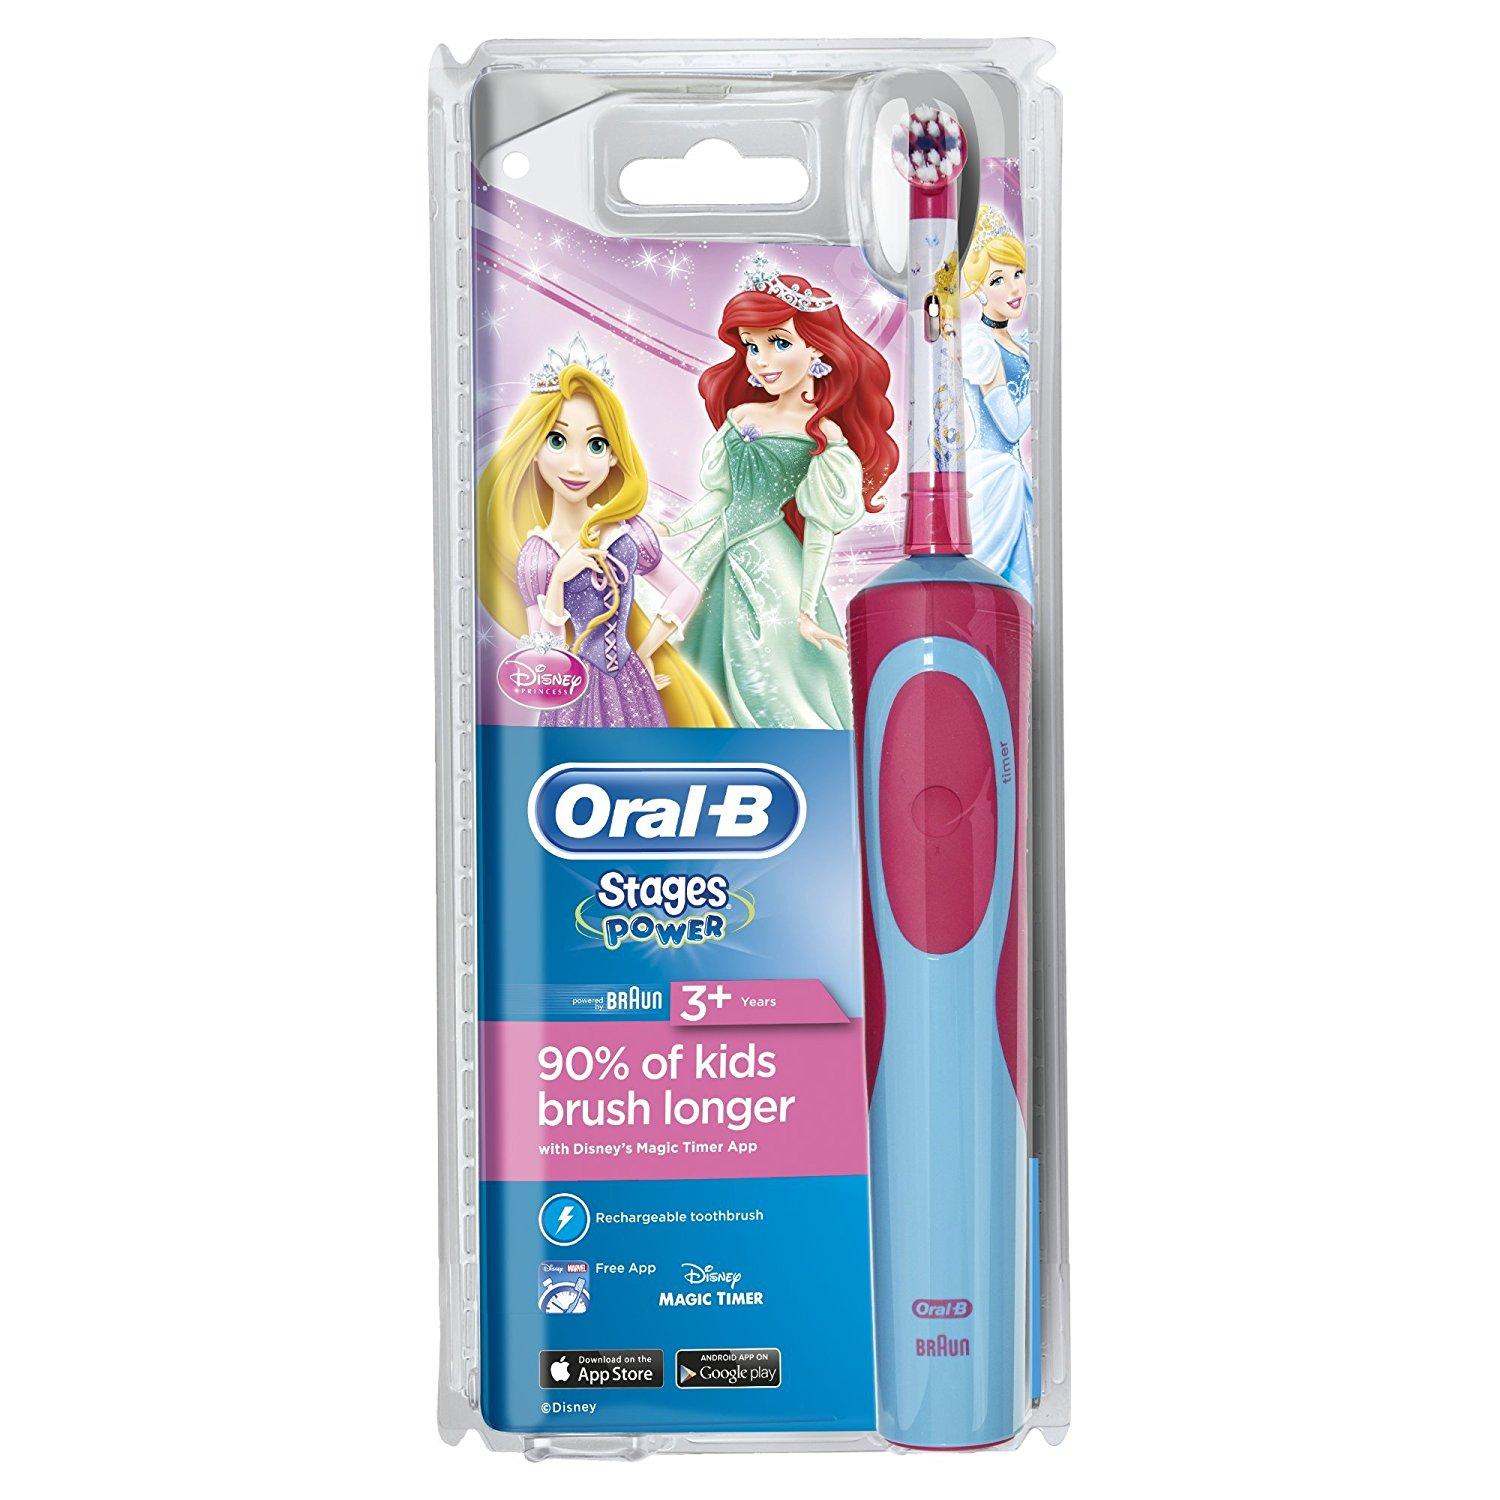 แปรงสีฟันไฟฟ้าเพื่อรอยยิ้มขาวสดใส บุรีรัมย์ แปรงสีฟันไฟฟ้าสำหรับเด็ก Oral B Stages Power Kids Electric Toothbrush  Disney Princesses